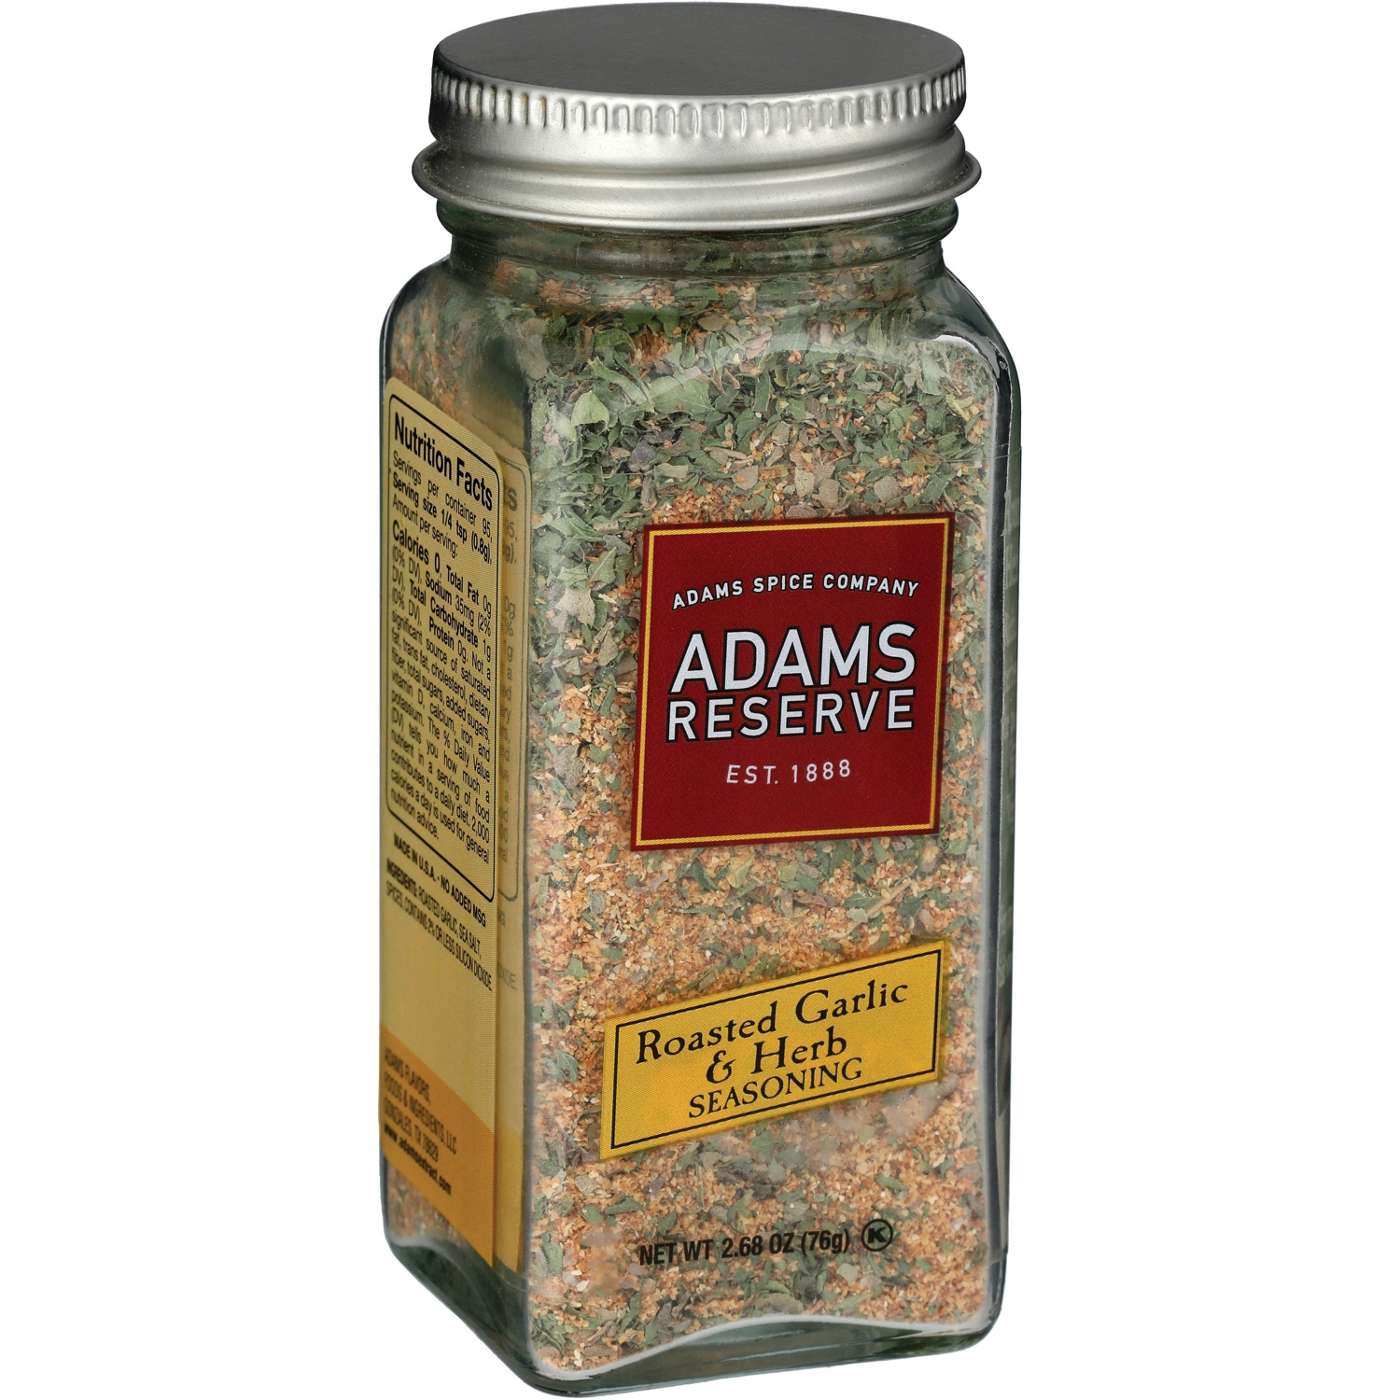 Adams Reserve Roasted Garlic & Herb Seasoning; image 2 of 2